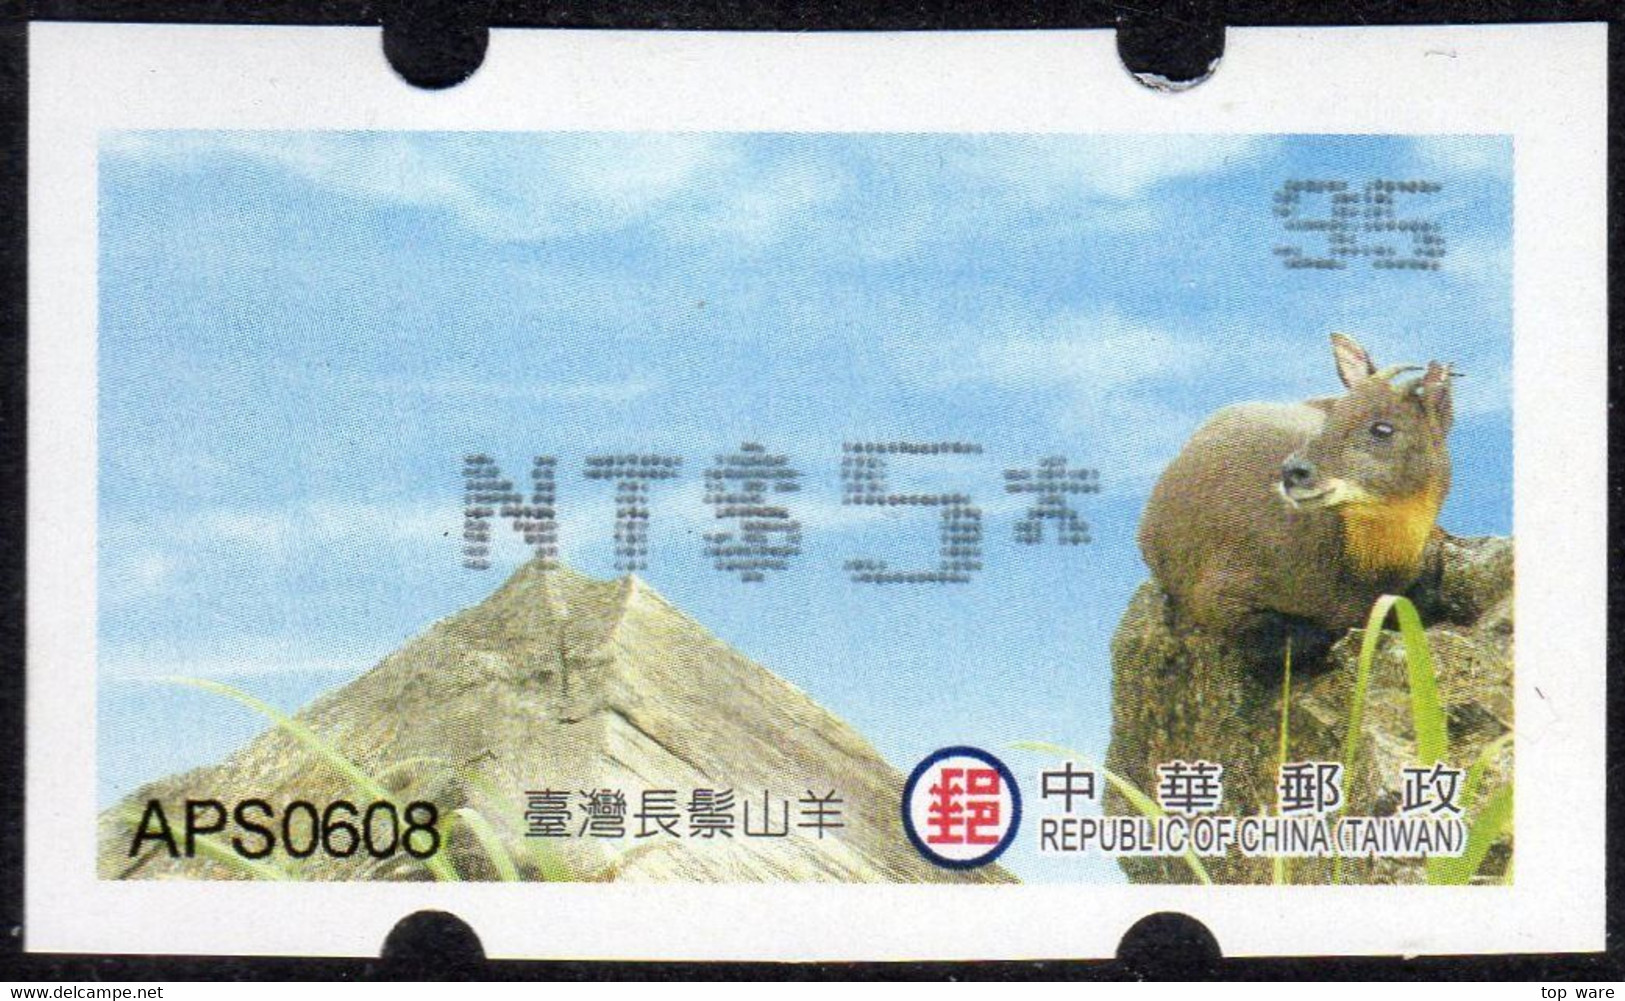 2019 Automatenmarken China Taiwan Serow MiNr.42 Black Nr.95 ATM NT$5 Xx Innovision Kiosk Etiquetas - Automaten